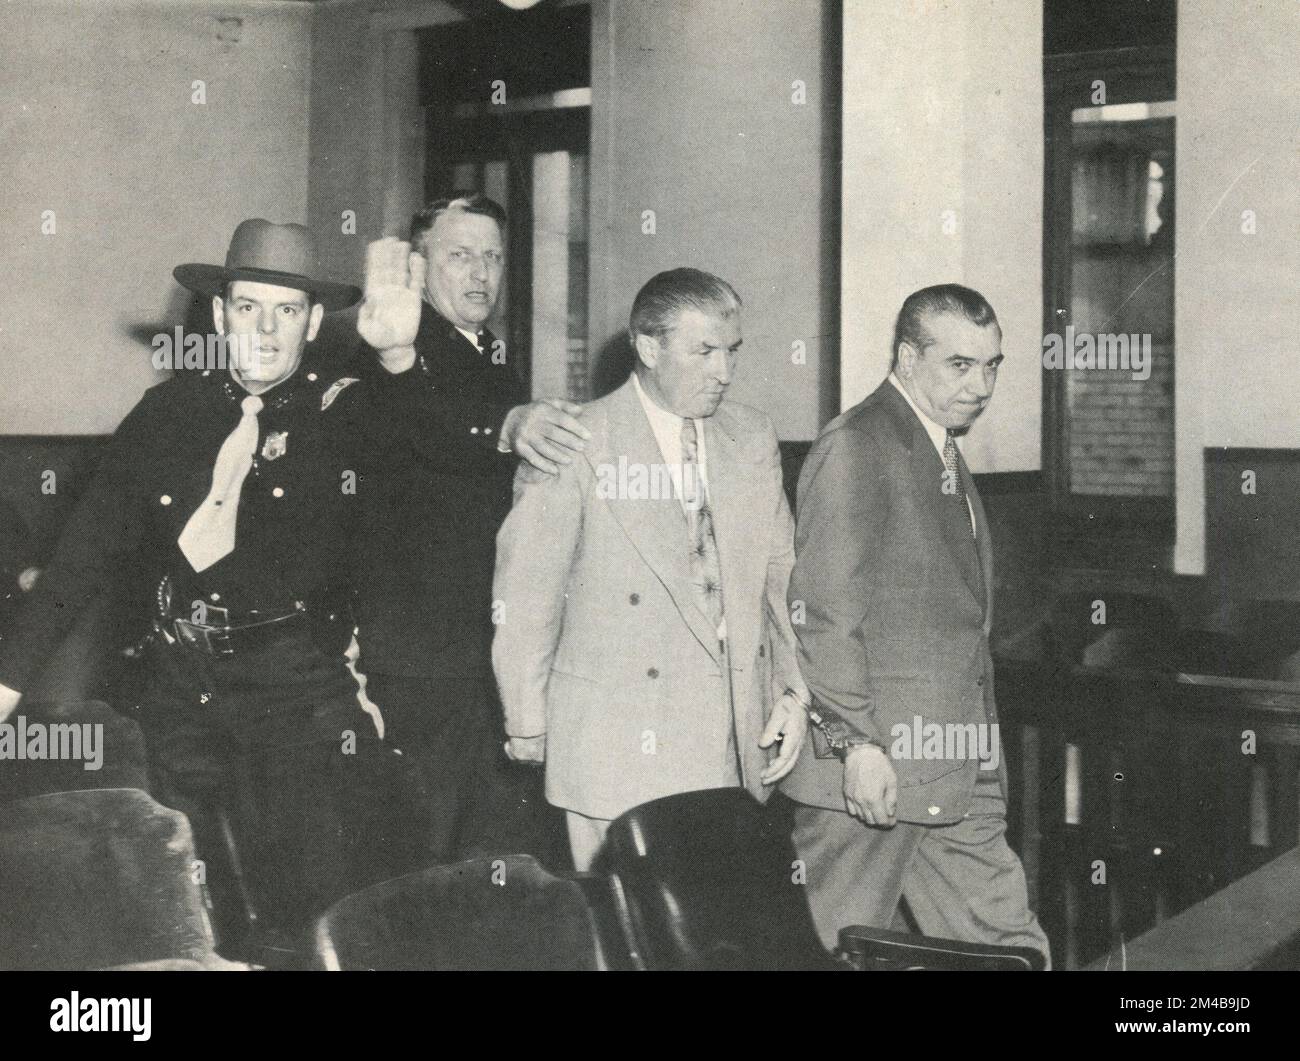 Joe Adonis, chef de la criminalité américano-italienne et mobster mafieux, condamné à la prison, États-Unis 1950s Banque D'Images